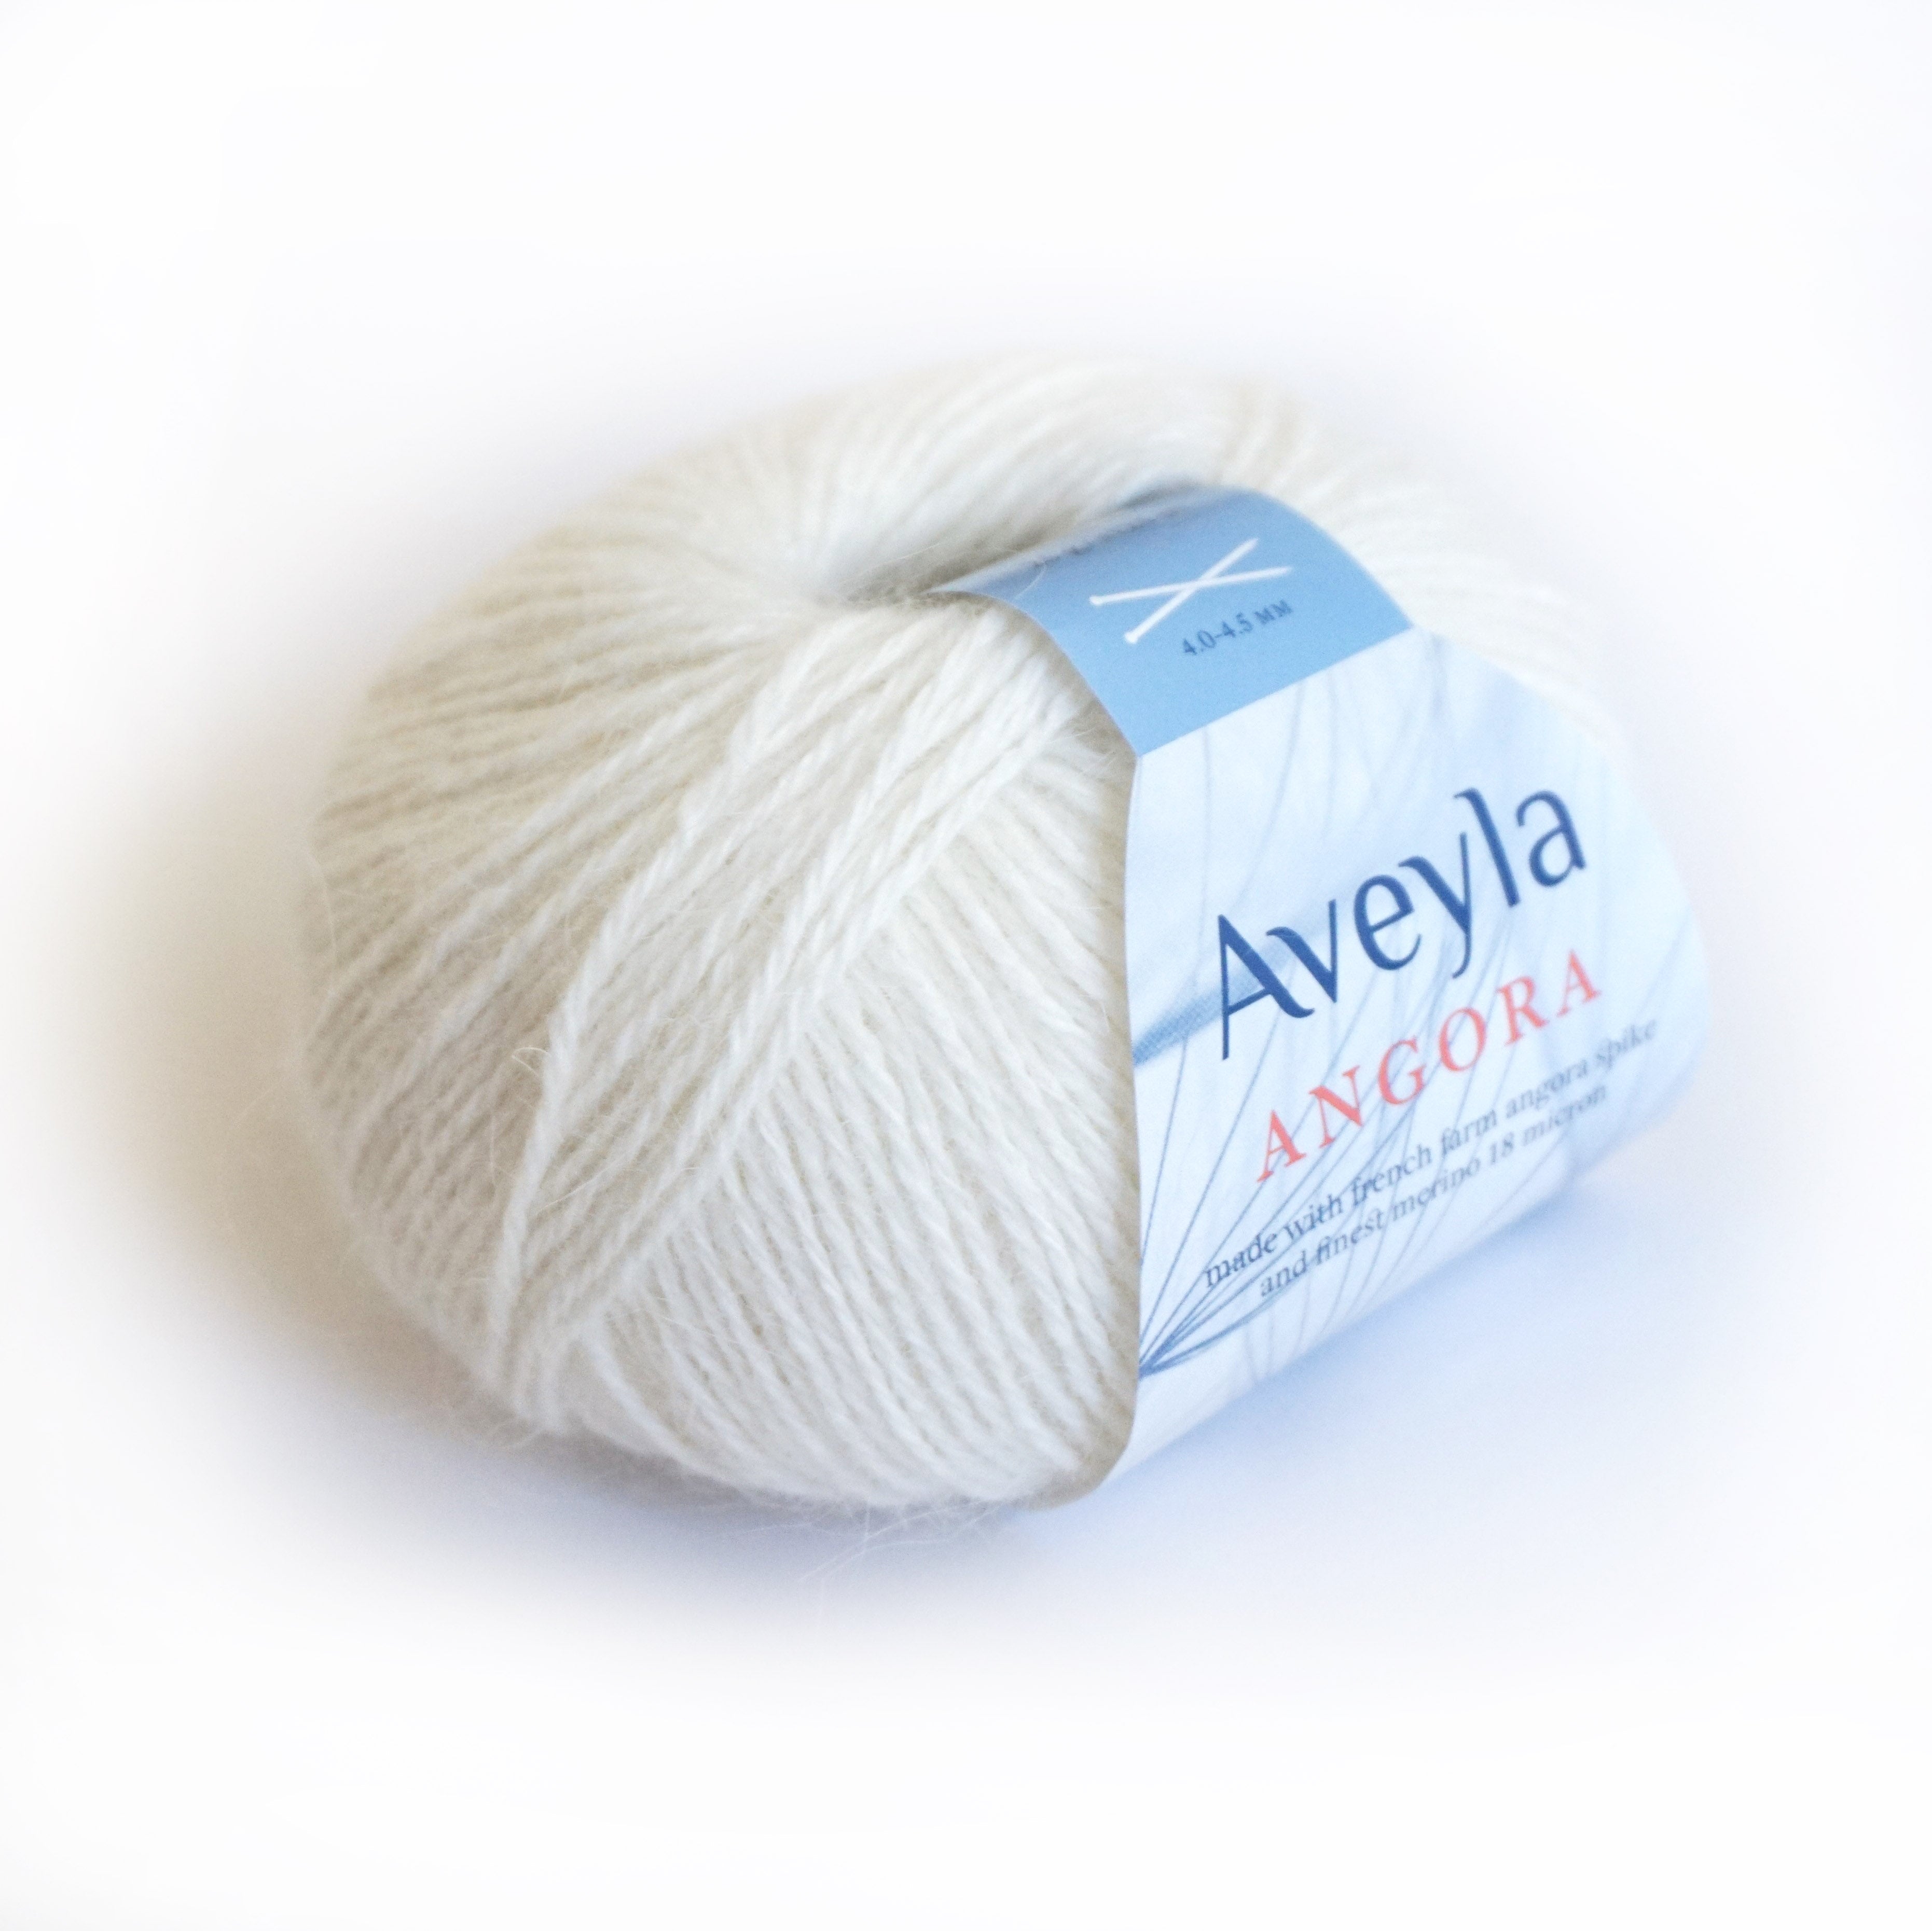 væv kan ikke se trække aveyla angora – Needles & Wool